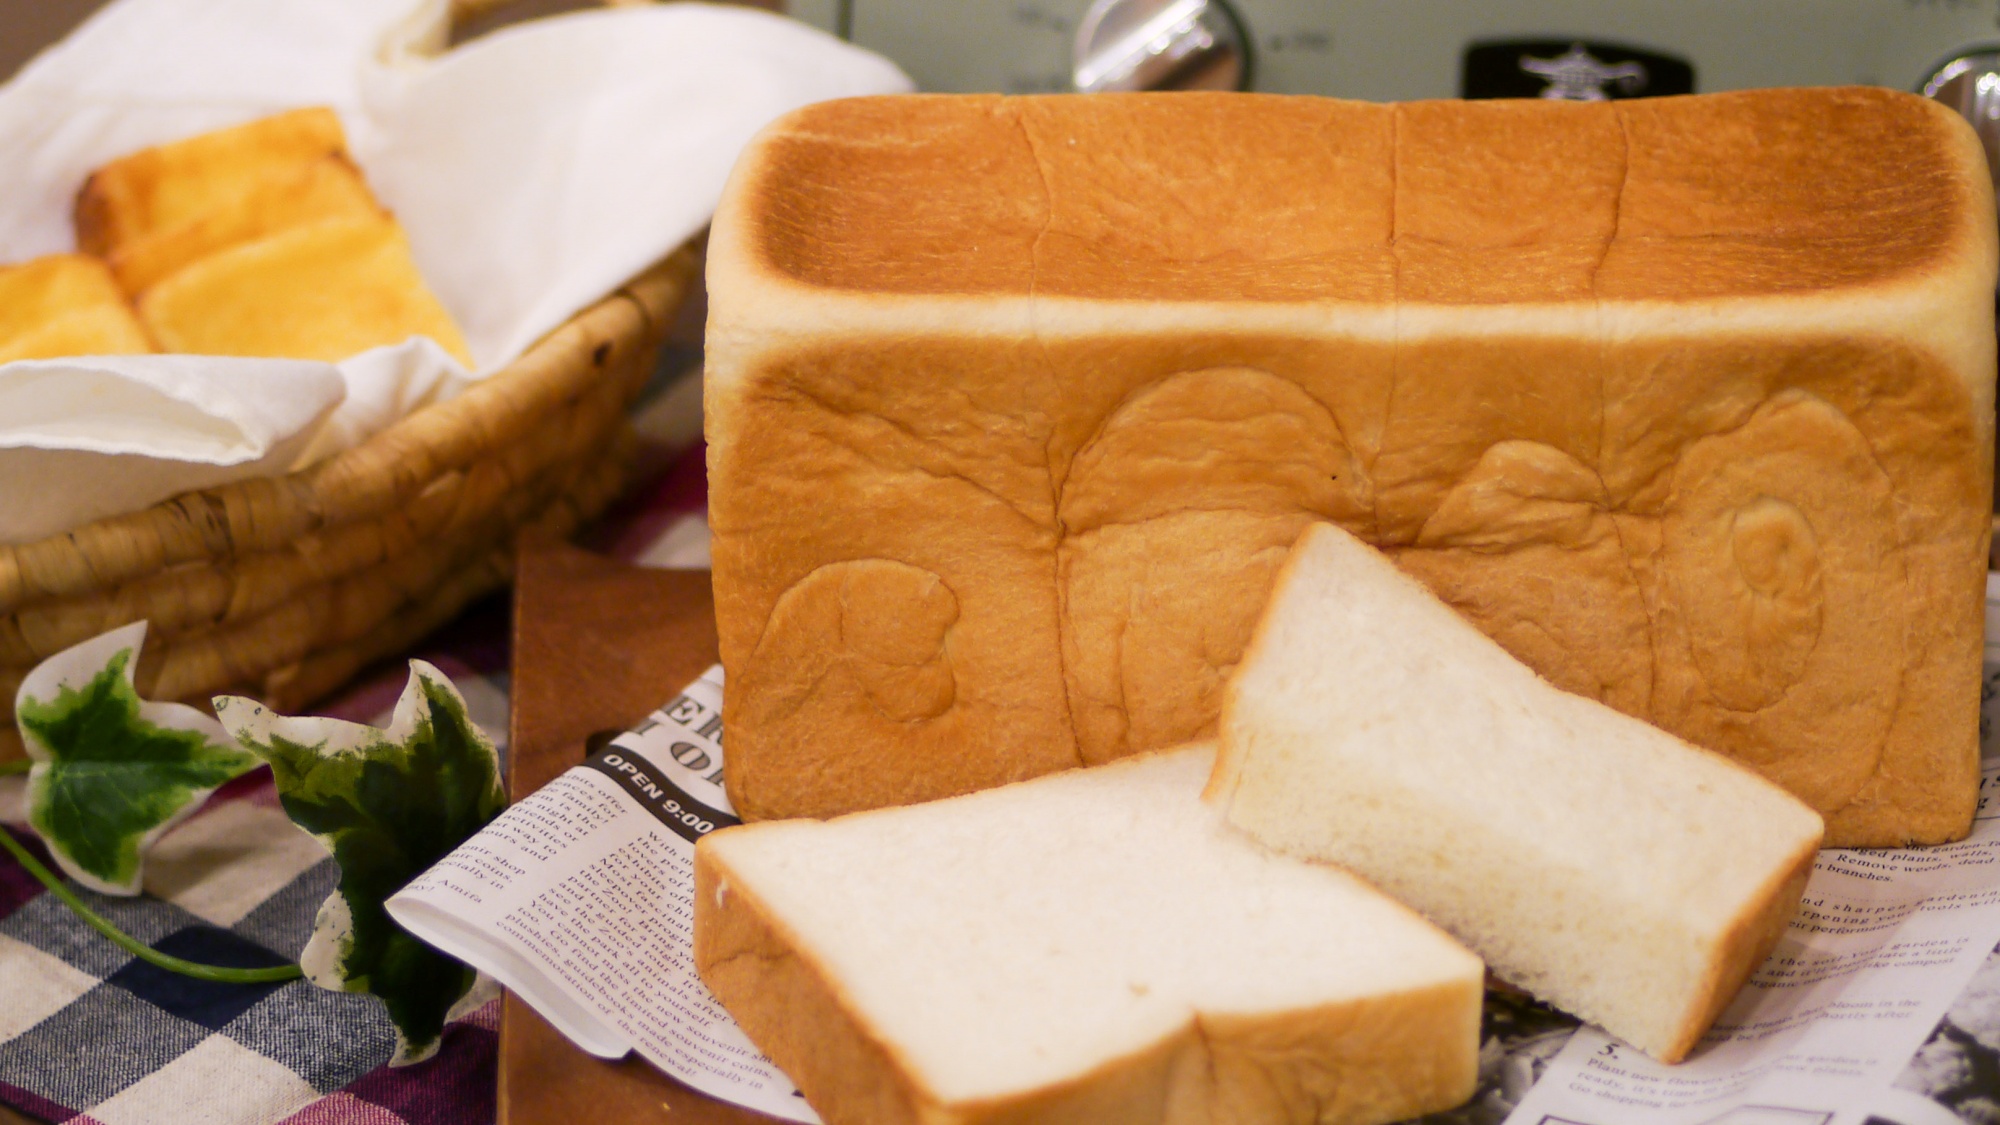 グループホテル「プレミアホテル-TSUBAKI-札幌」のオリジナル食パン「ホテルブレッド椿」も提供中